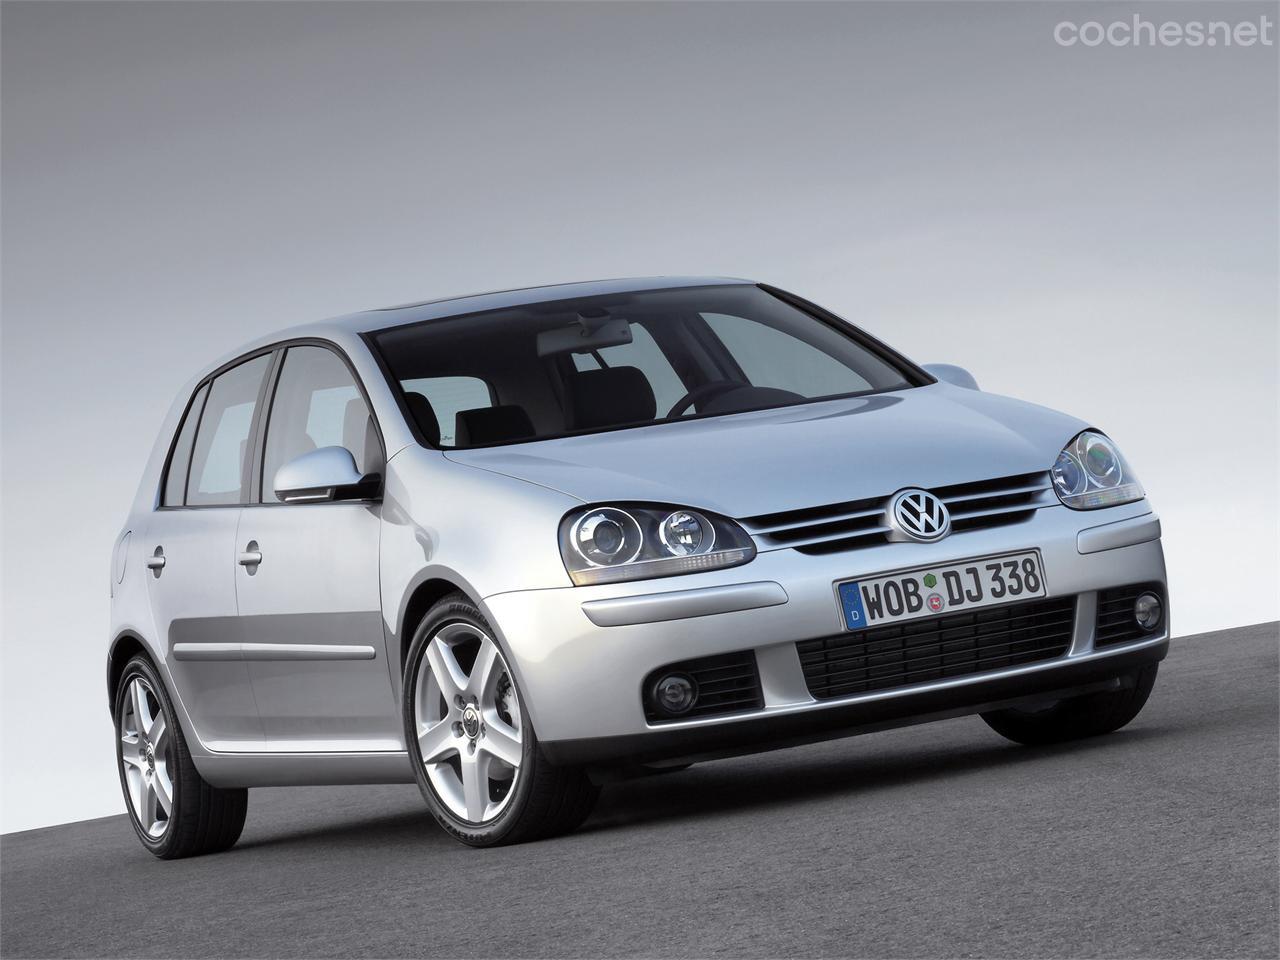 Cómo cambiar el aceite y de filtro de aceite Volkswagen Golf 5 1.9 TDI?